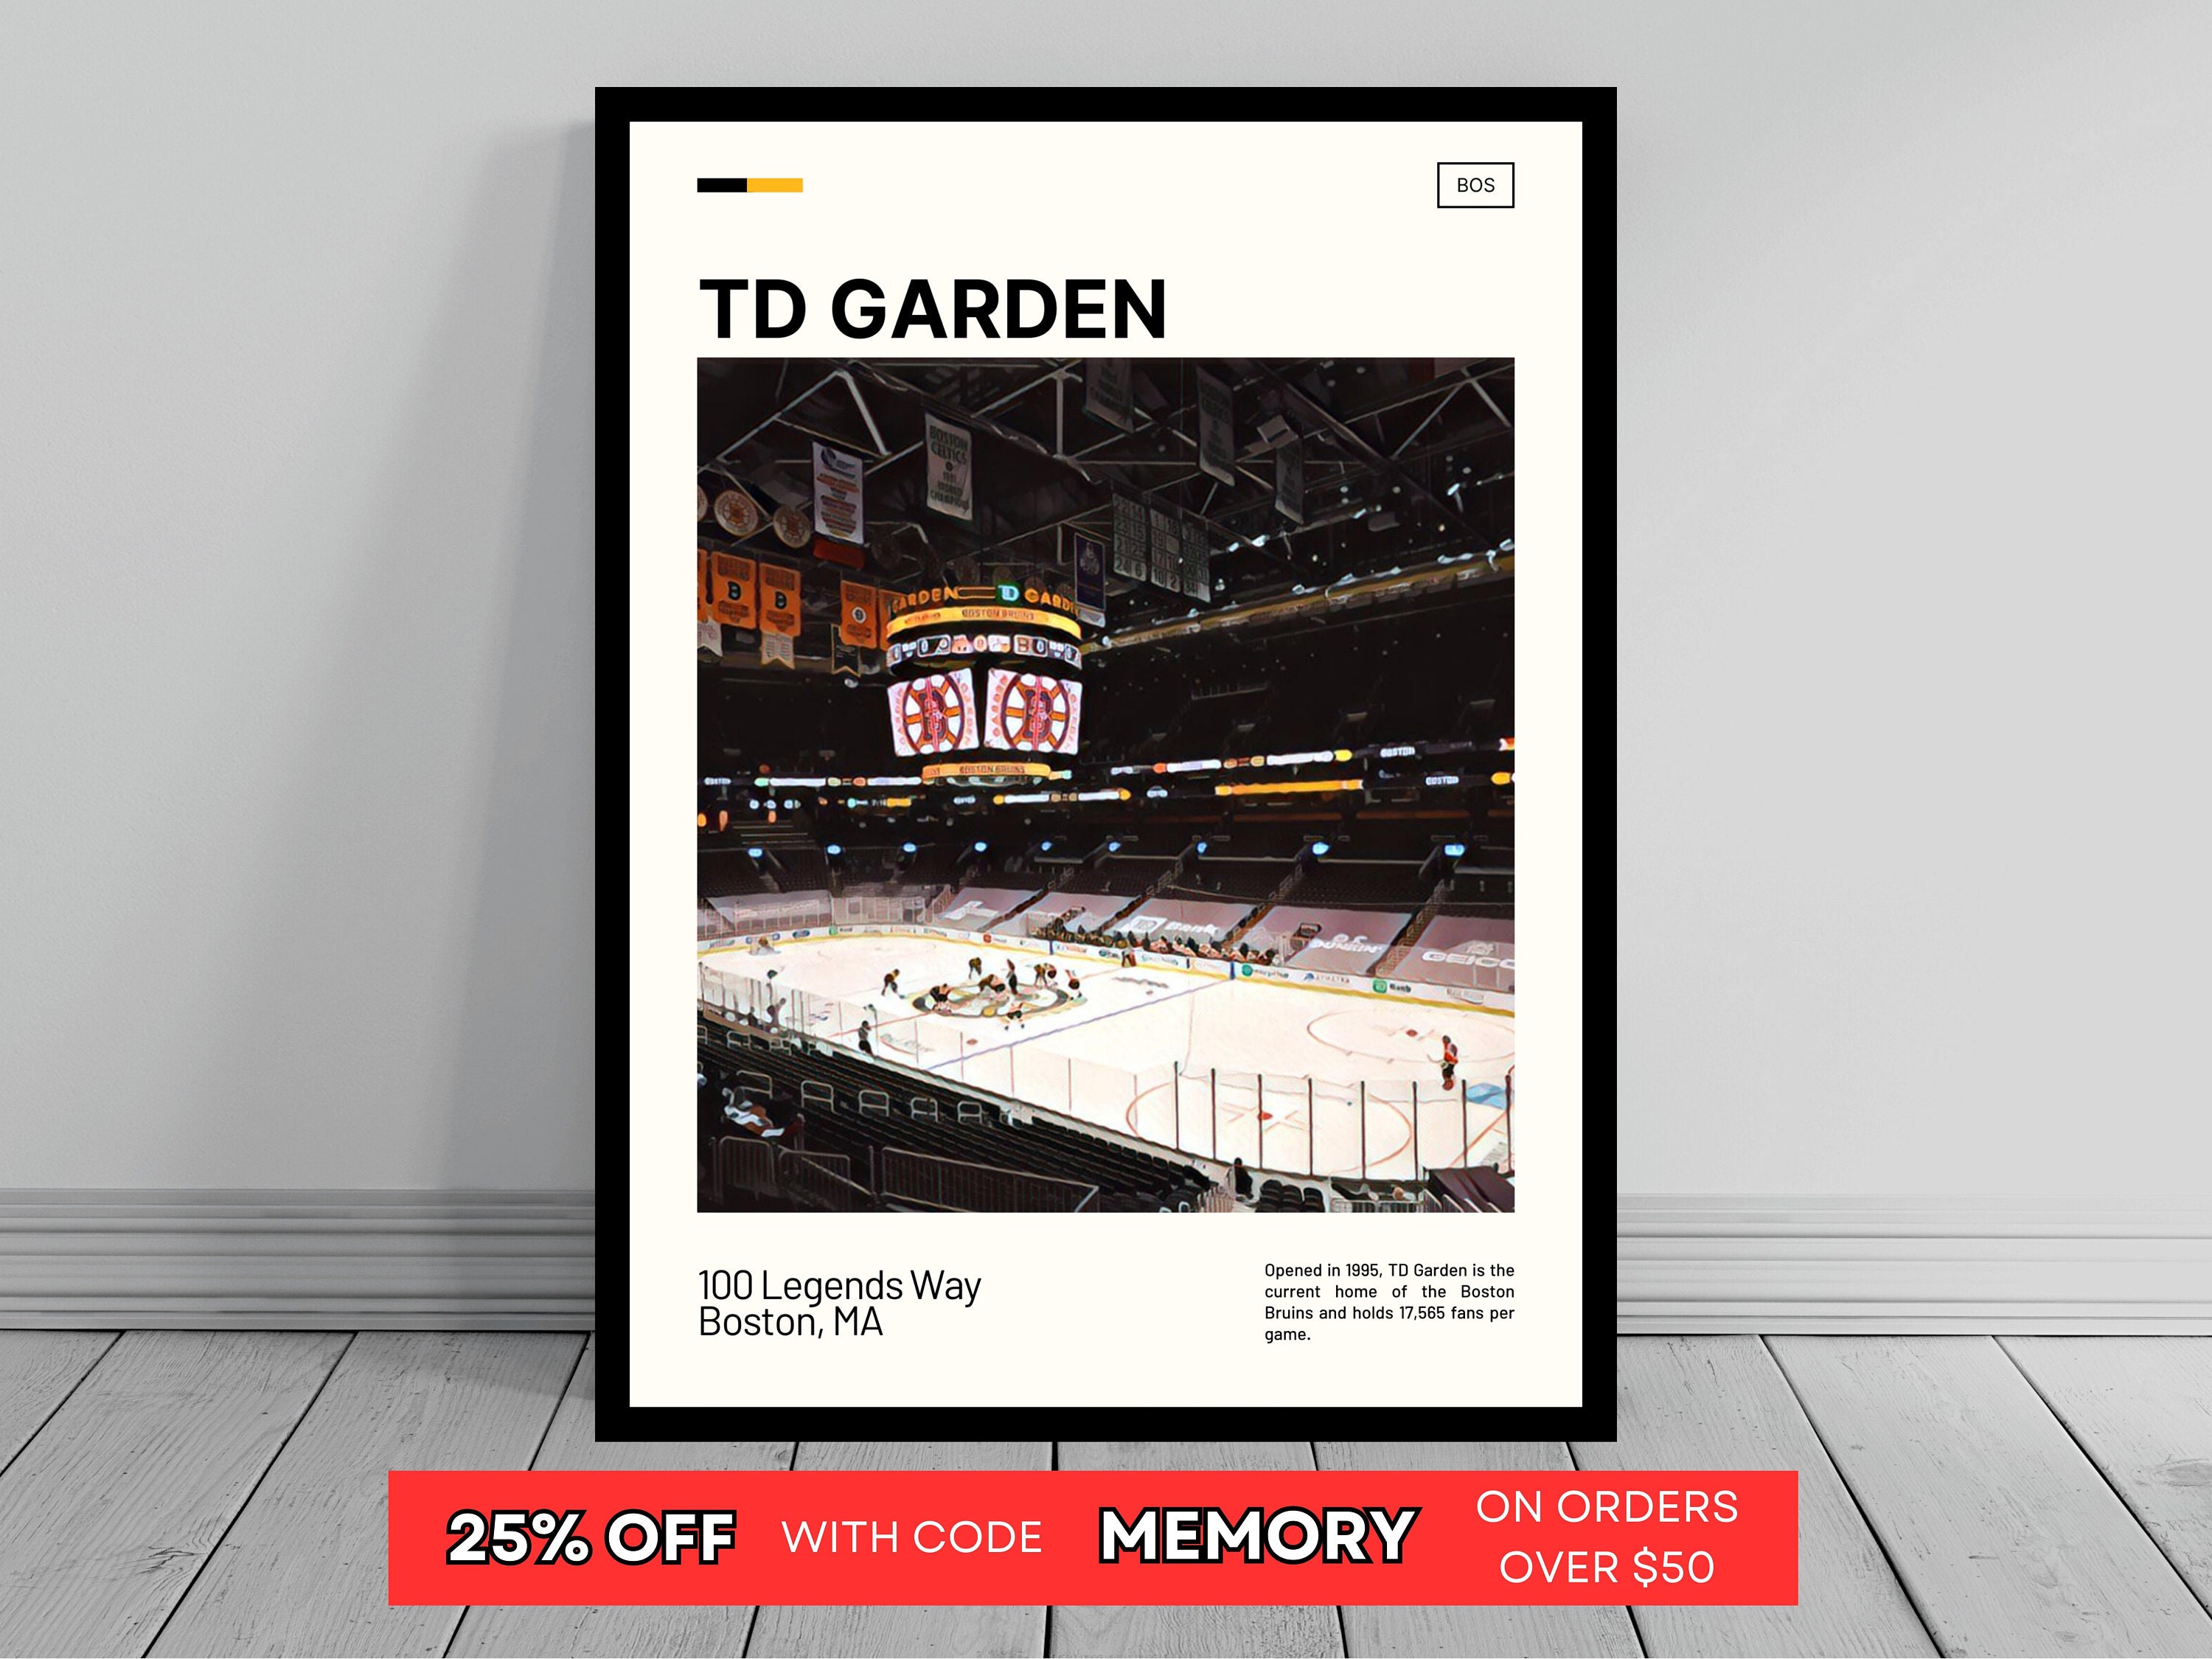 Boston Bruins Tailgate  TD Garden Gameday Guide